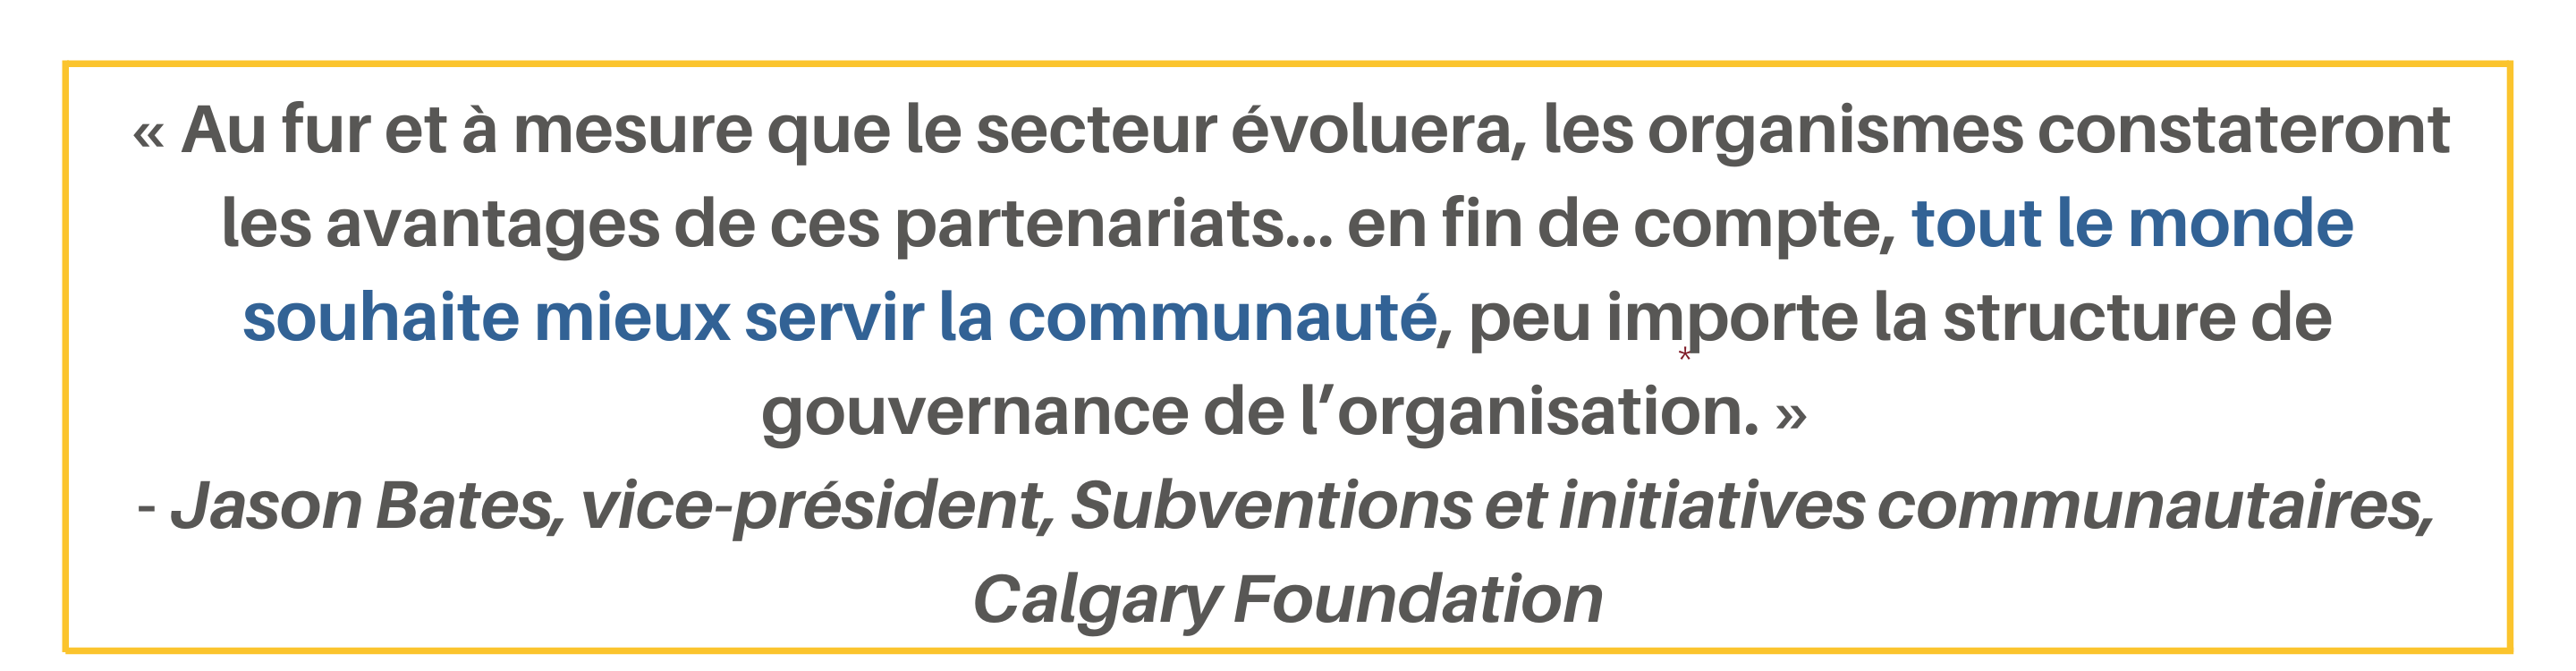 « Au fur et à mesure que le secteur évoluera, les organismes constateront les avantages de ces partenariats… en fin de compte, tout le monde souhaite mieux servir la communauté, peu importe la structure de gouvernance de l’organisation. » - Jason Bates, vice-président, Subventions et initiatives communautaires, Calgary Foundation